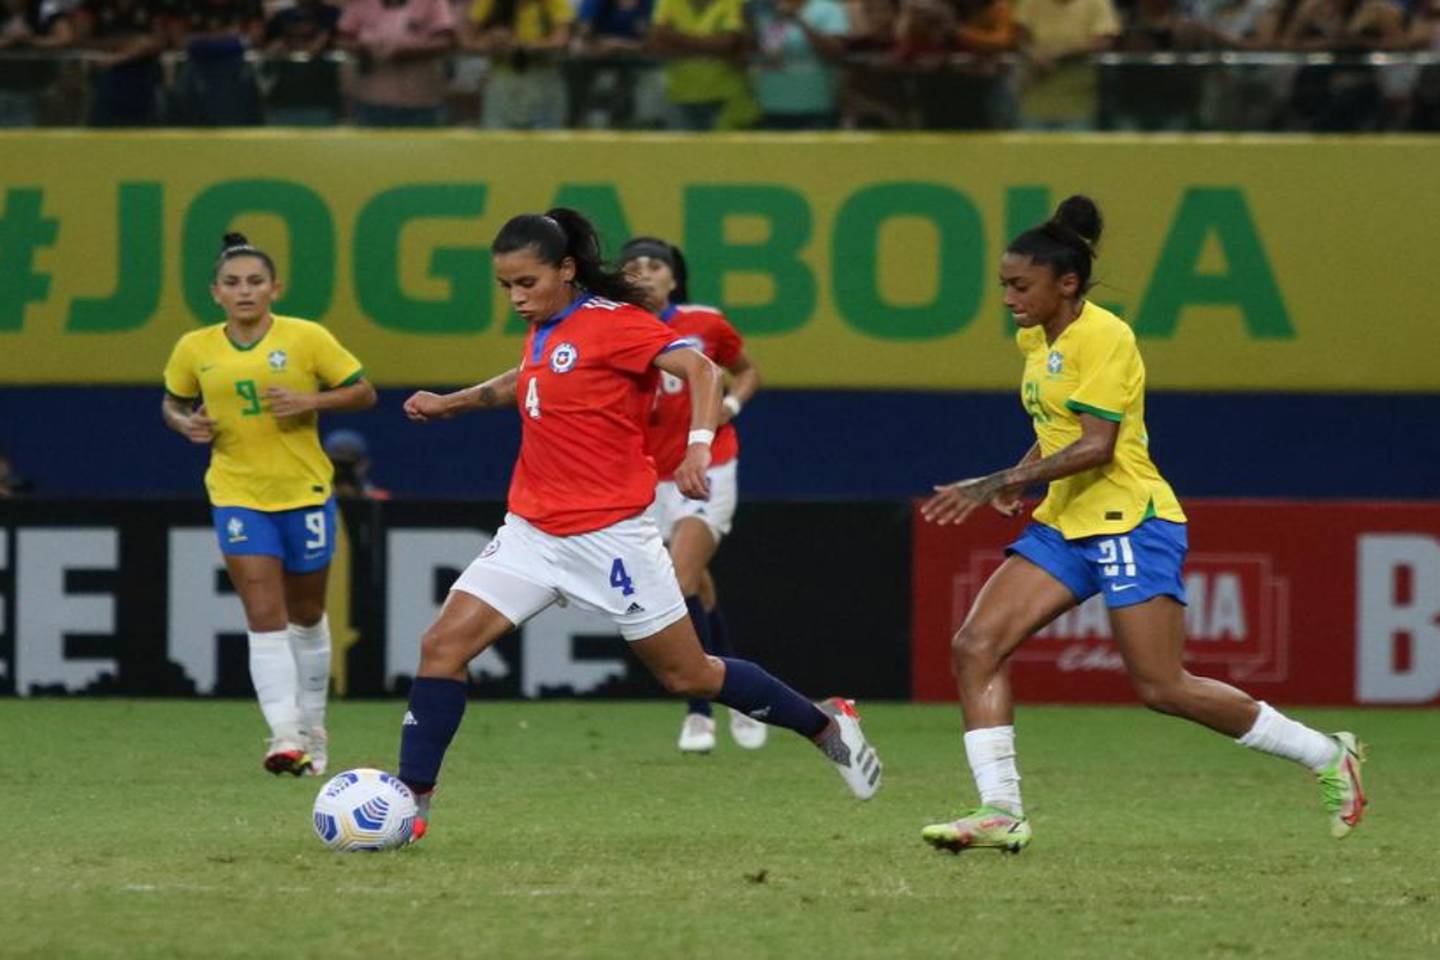 Francisca Lara, jugadora de la Selección Chilena, disputa el balón con una futbolista brasileña en un partido amistoso jugado en Manaos.